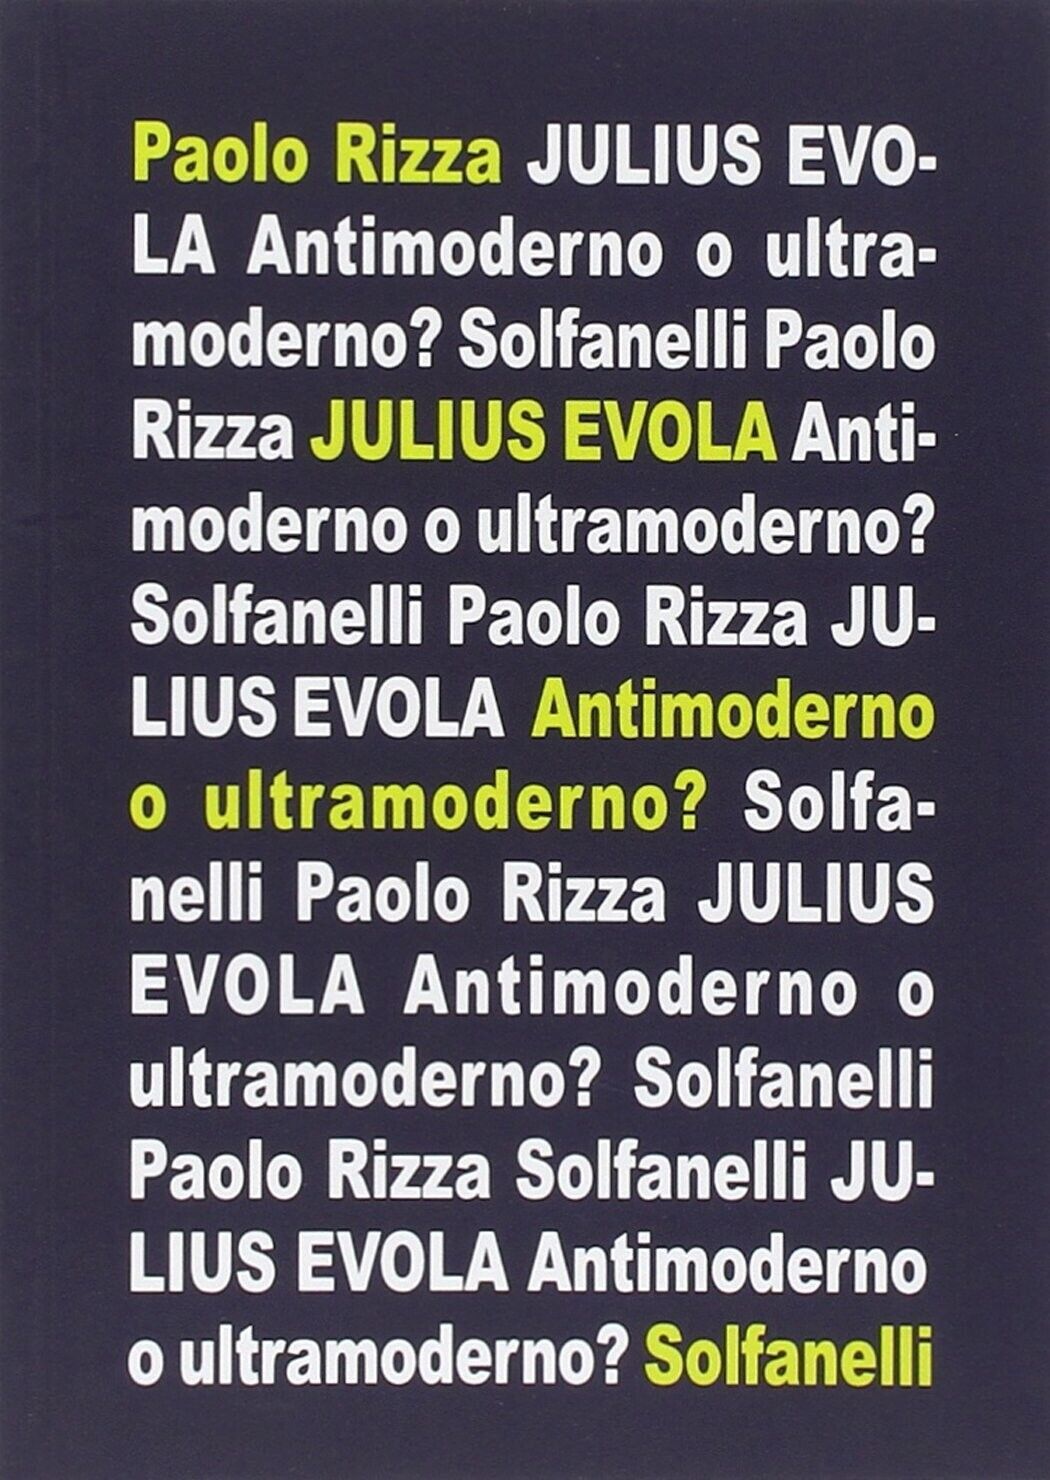  Julius Evola. Antimoderno e ultramoderno di Paolo Rizza, 2014, Solfanelli